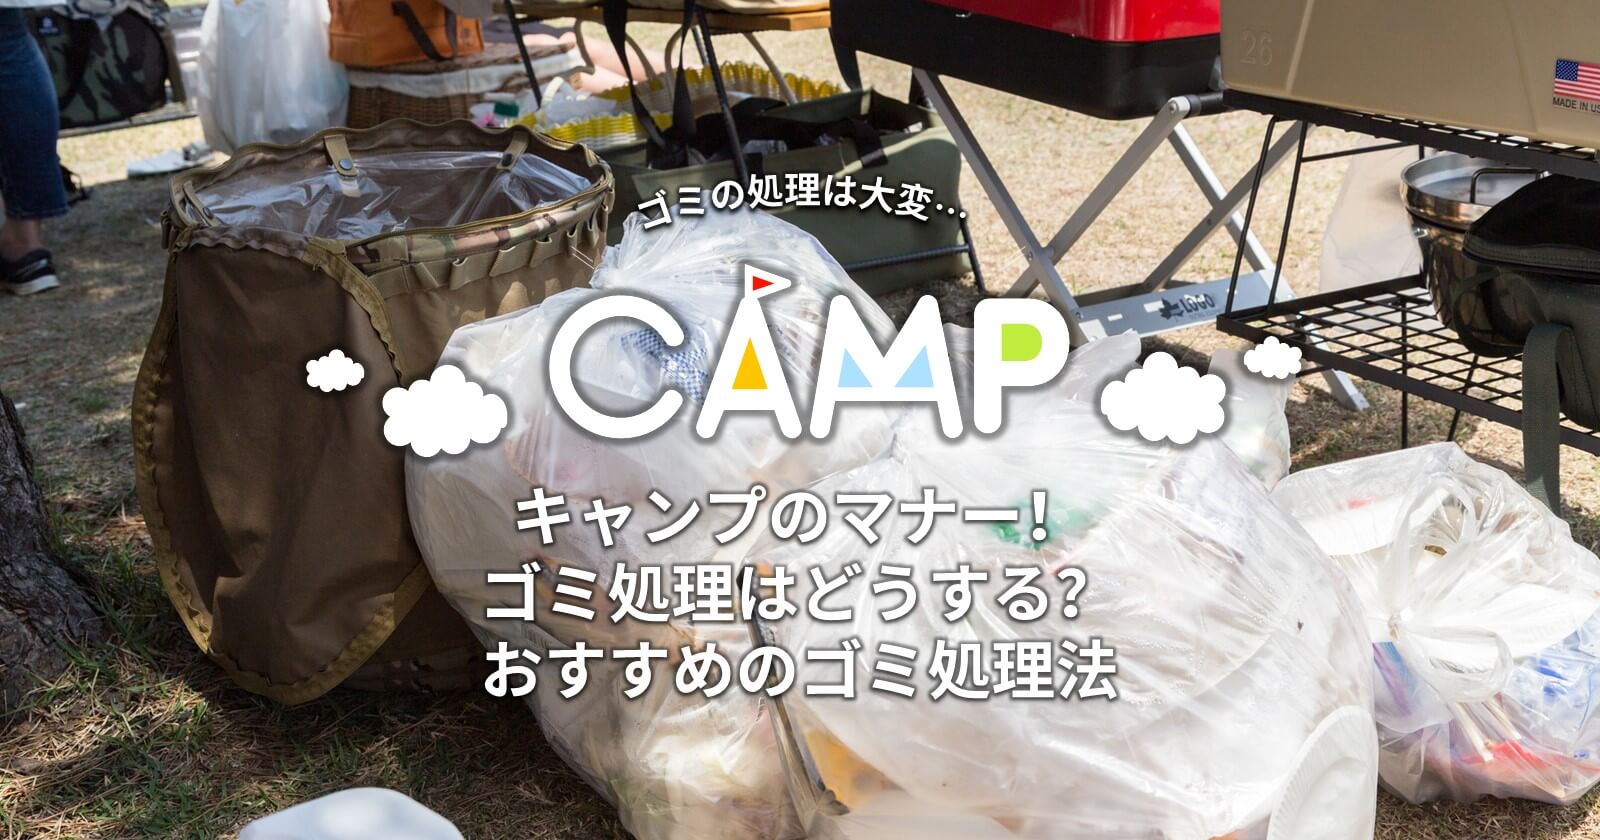 キャンプのマナー ゴミ処理はどうする 車の旅におすすめのゴミ処理法 Takibi タキビ キャンプ アウトドアの総合情報サイト